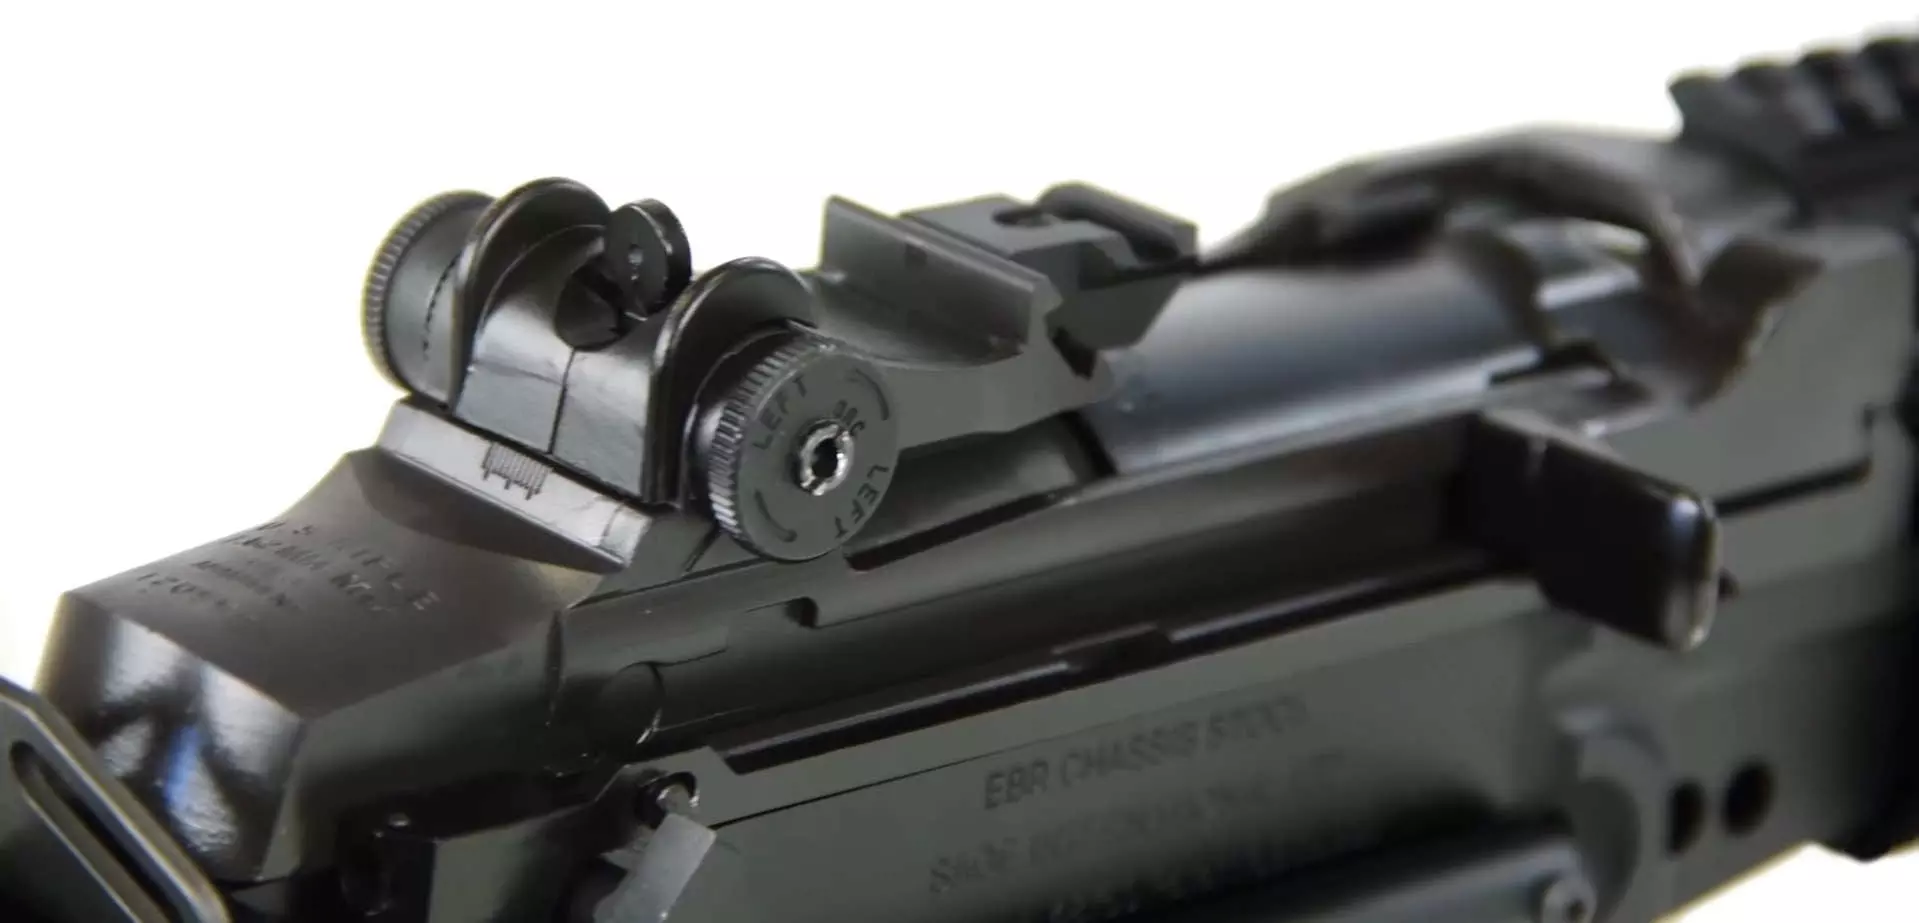 M14 laser tag sniper gun charging handle